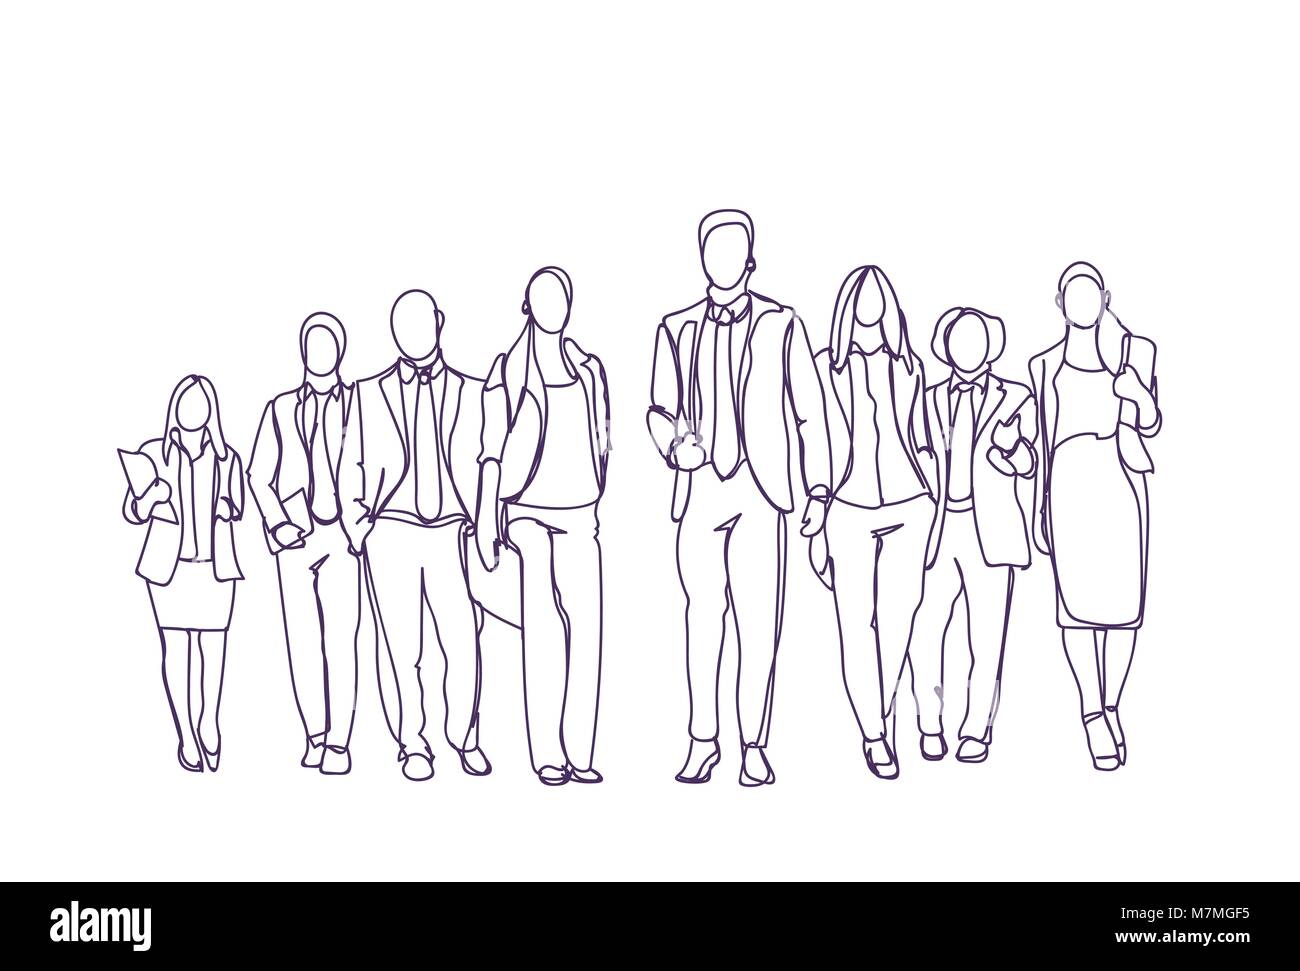 Grupo de Empresarios dibujadas a mano avanzando sobre fondo blanco, el equipo del sketch de gente de negocios Ilustración del Vector